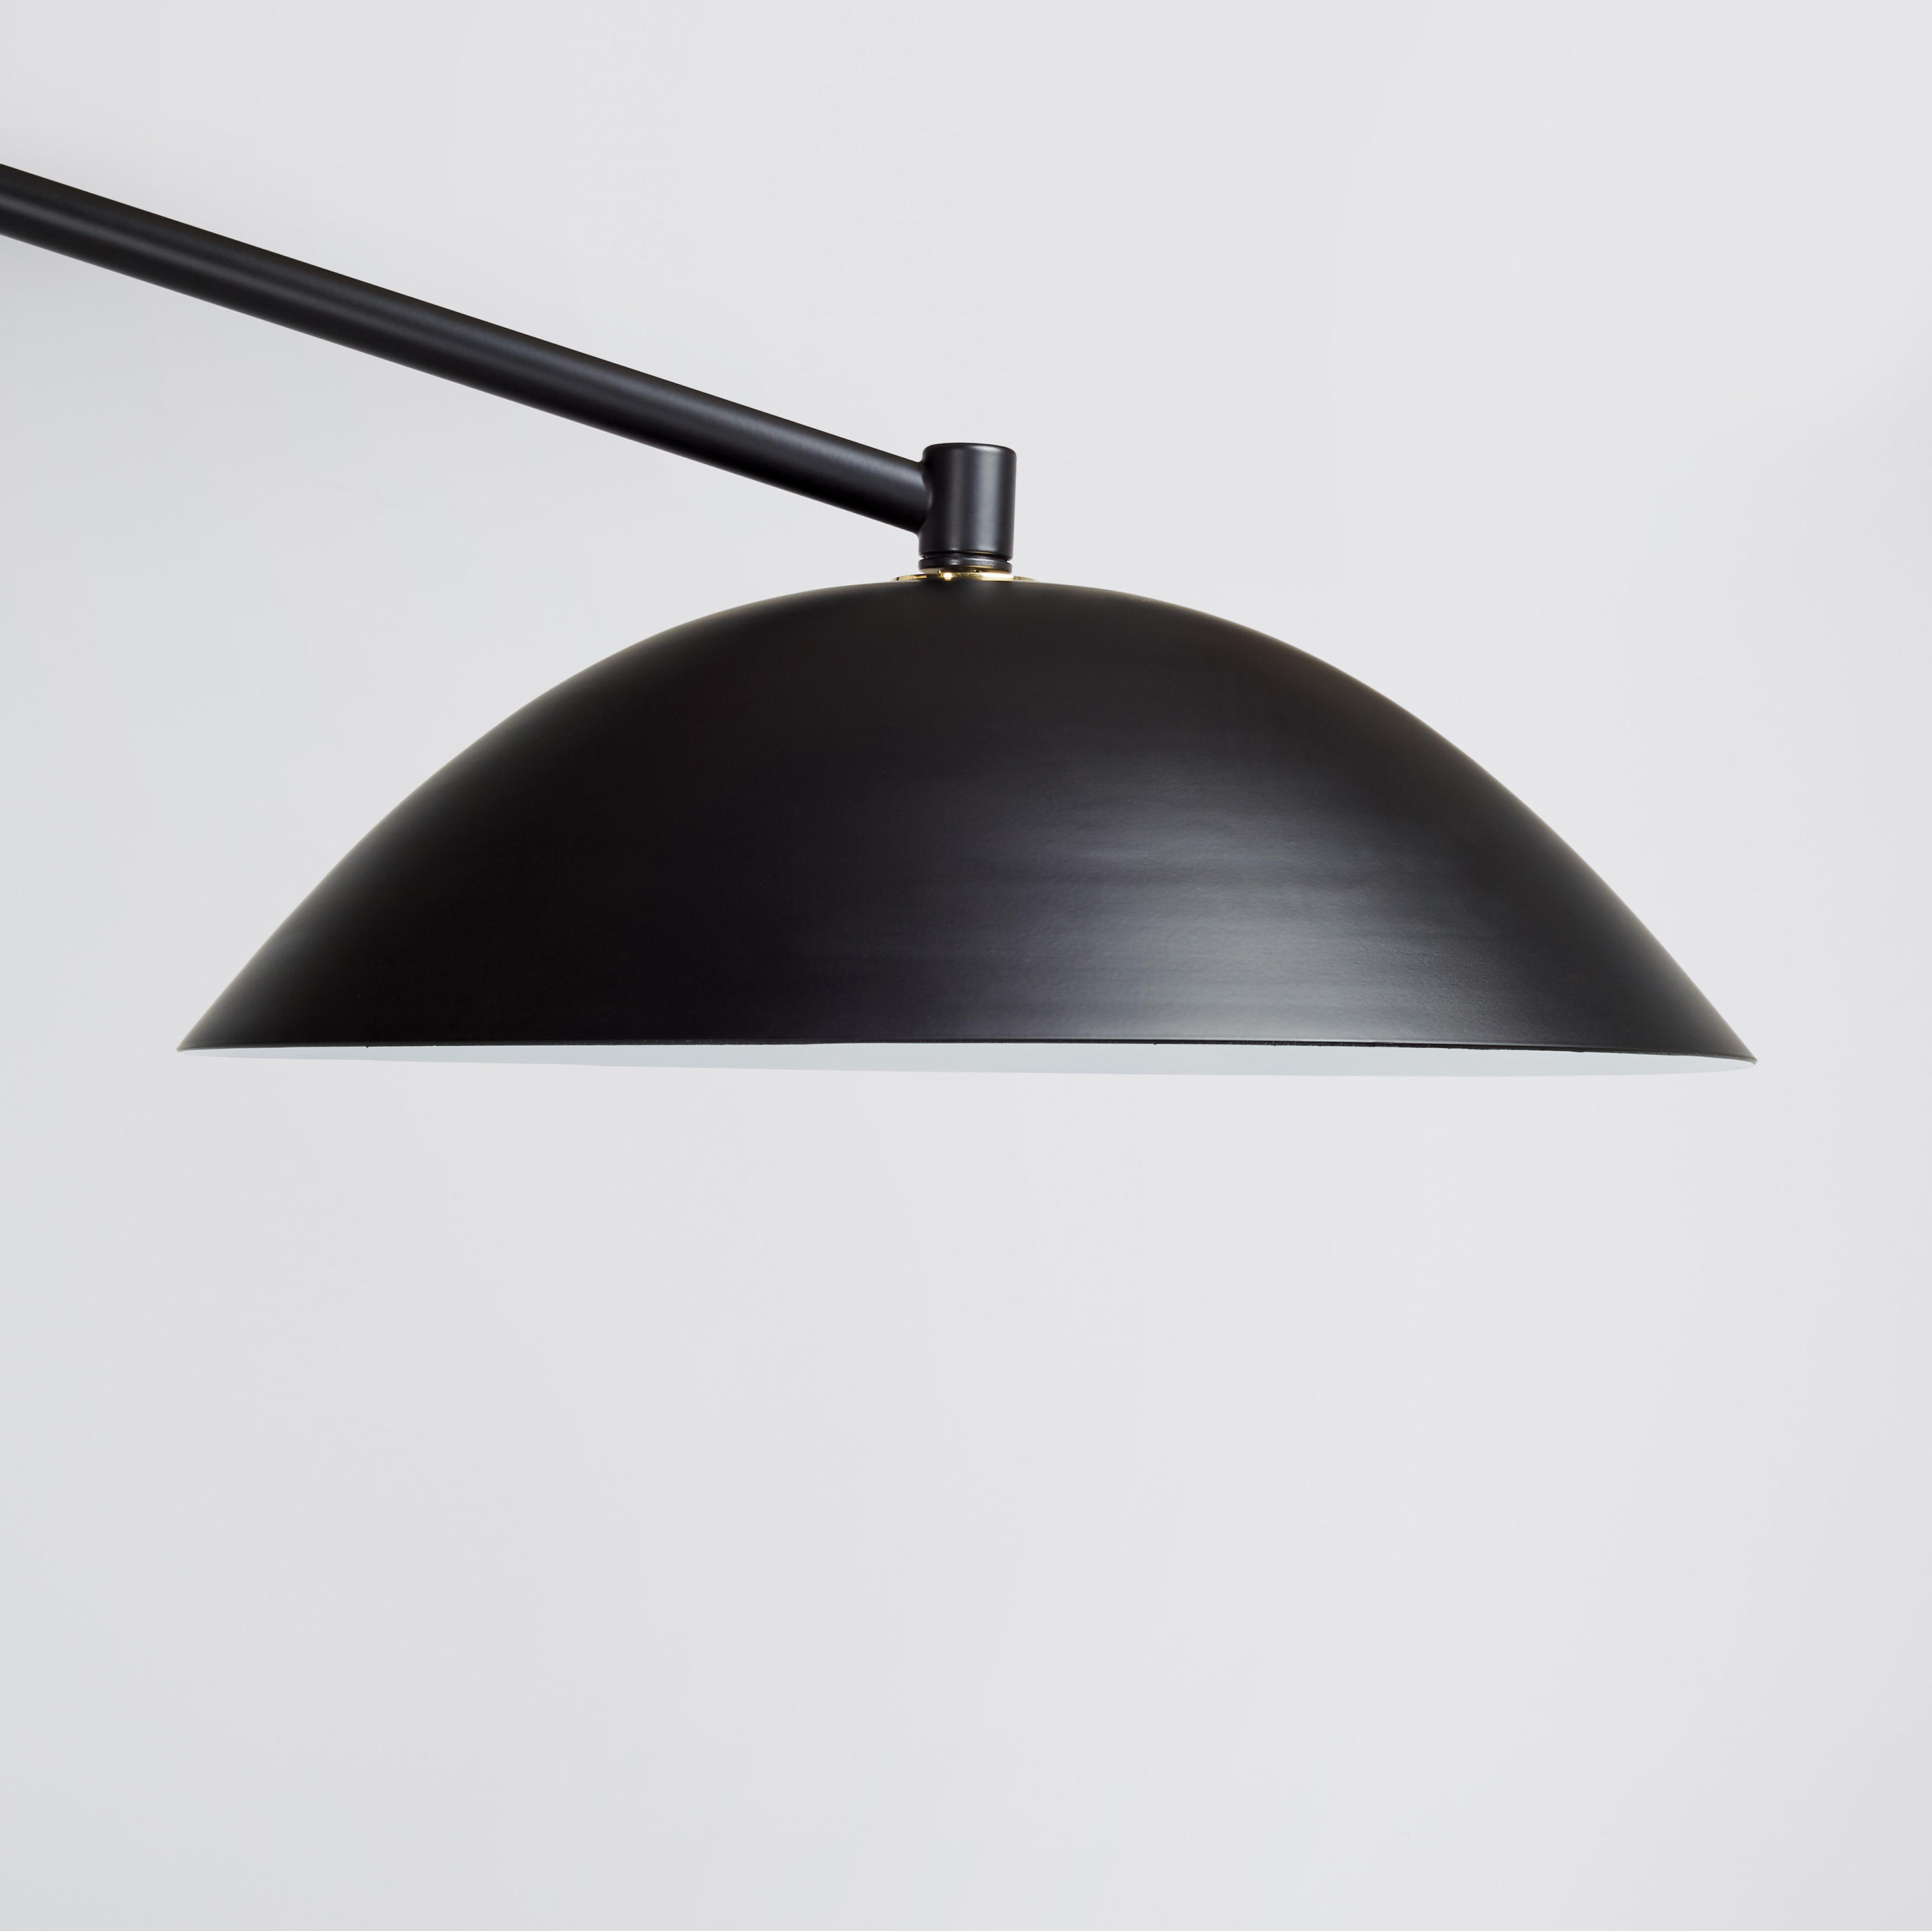 Sten Floor Lamp Designer Furniture Architonic